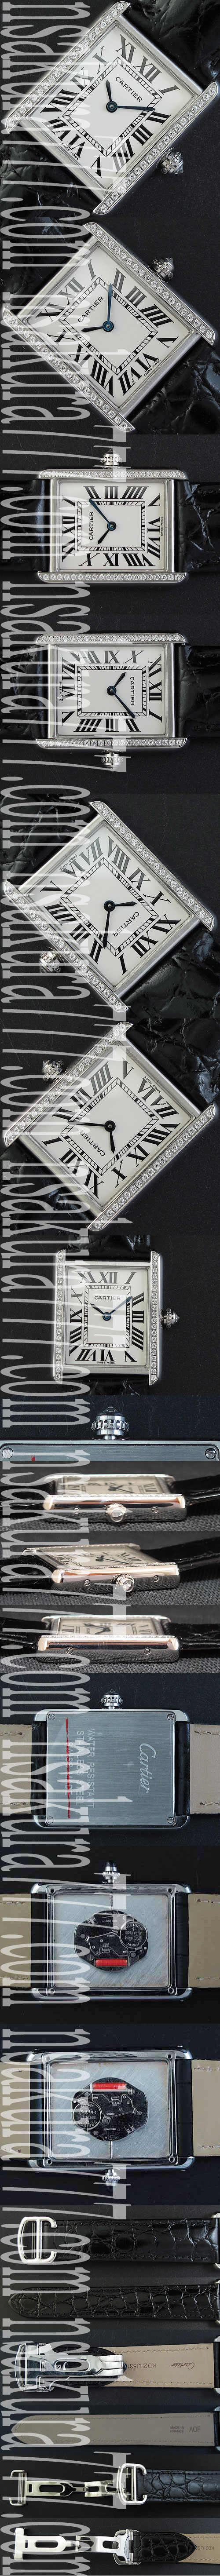 防水腕時計 カルティエ タンクアングレーズ クォーツムーブメント搭載A7 白い文字盤 サファイヤクリスタル